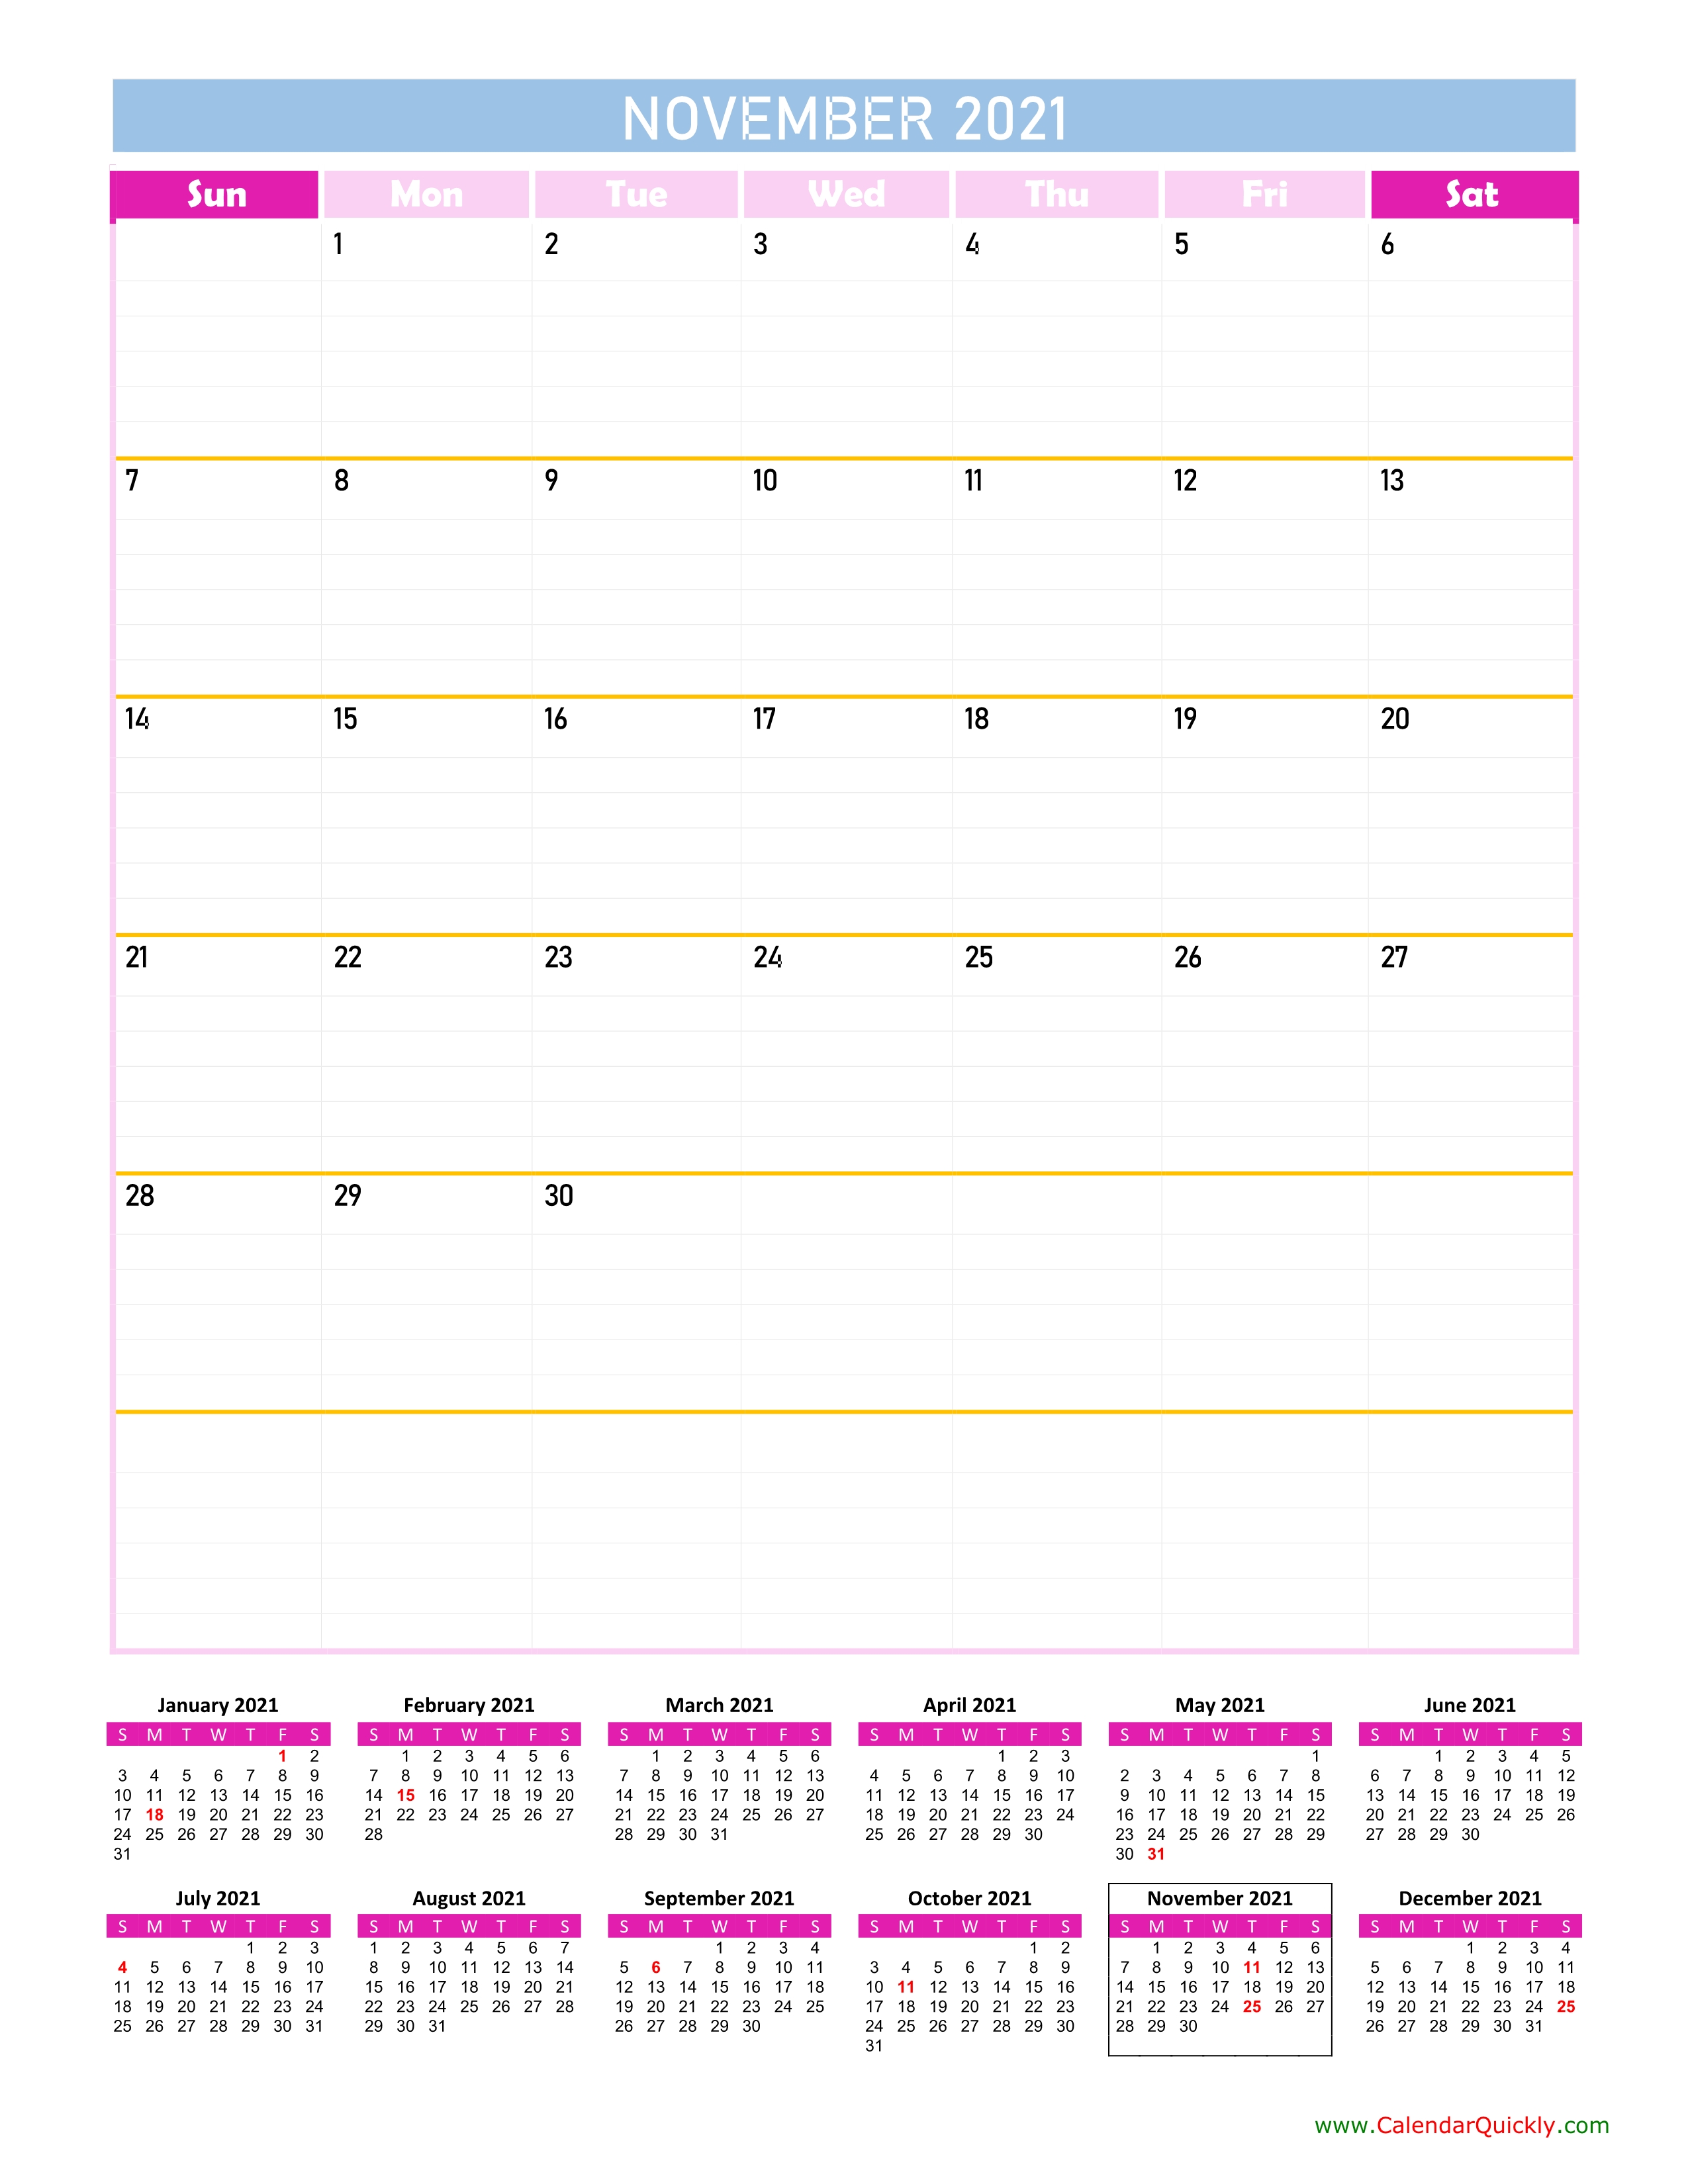 November Calendar 2021 Vertical | Calendar Quickly November 2021 Calendar Starting Monday